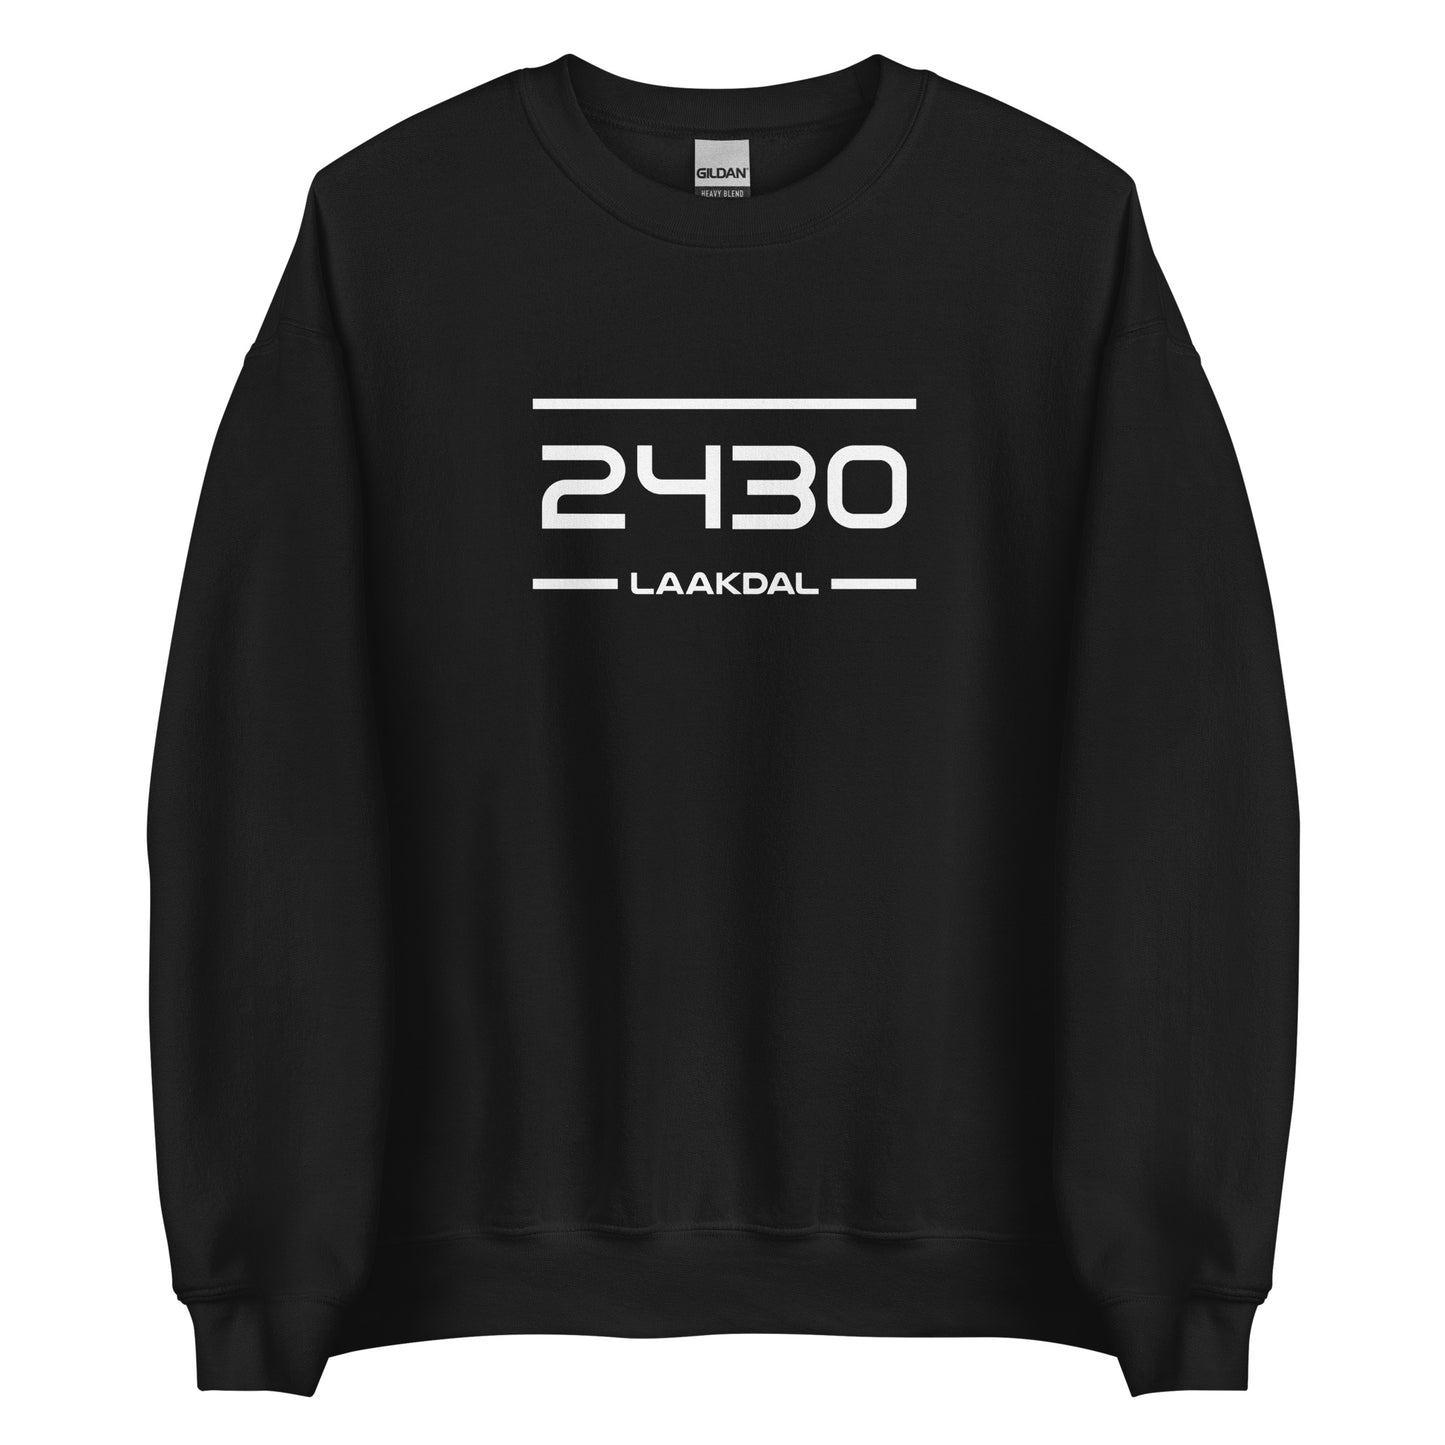 Sweater - 2430 - Laakdal (M/V)